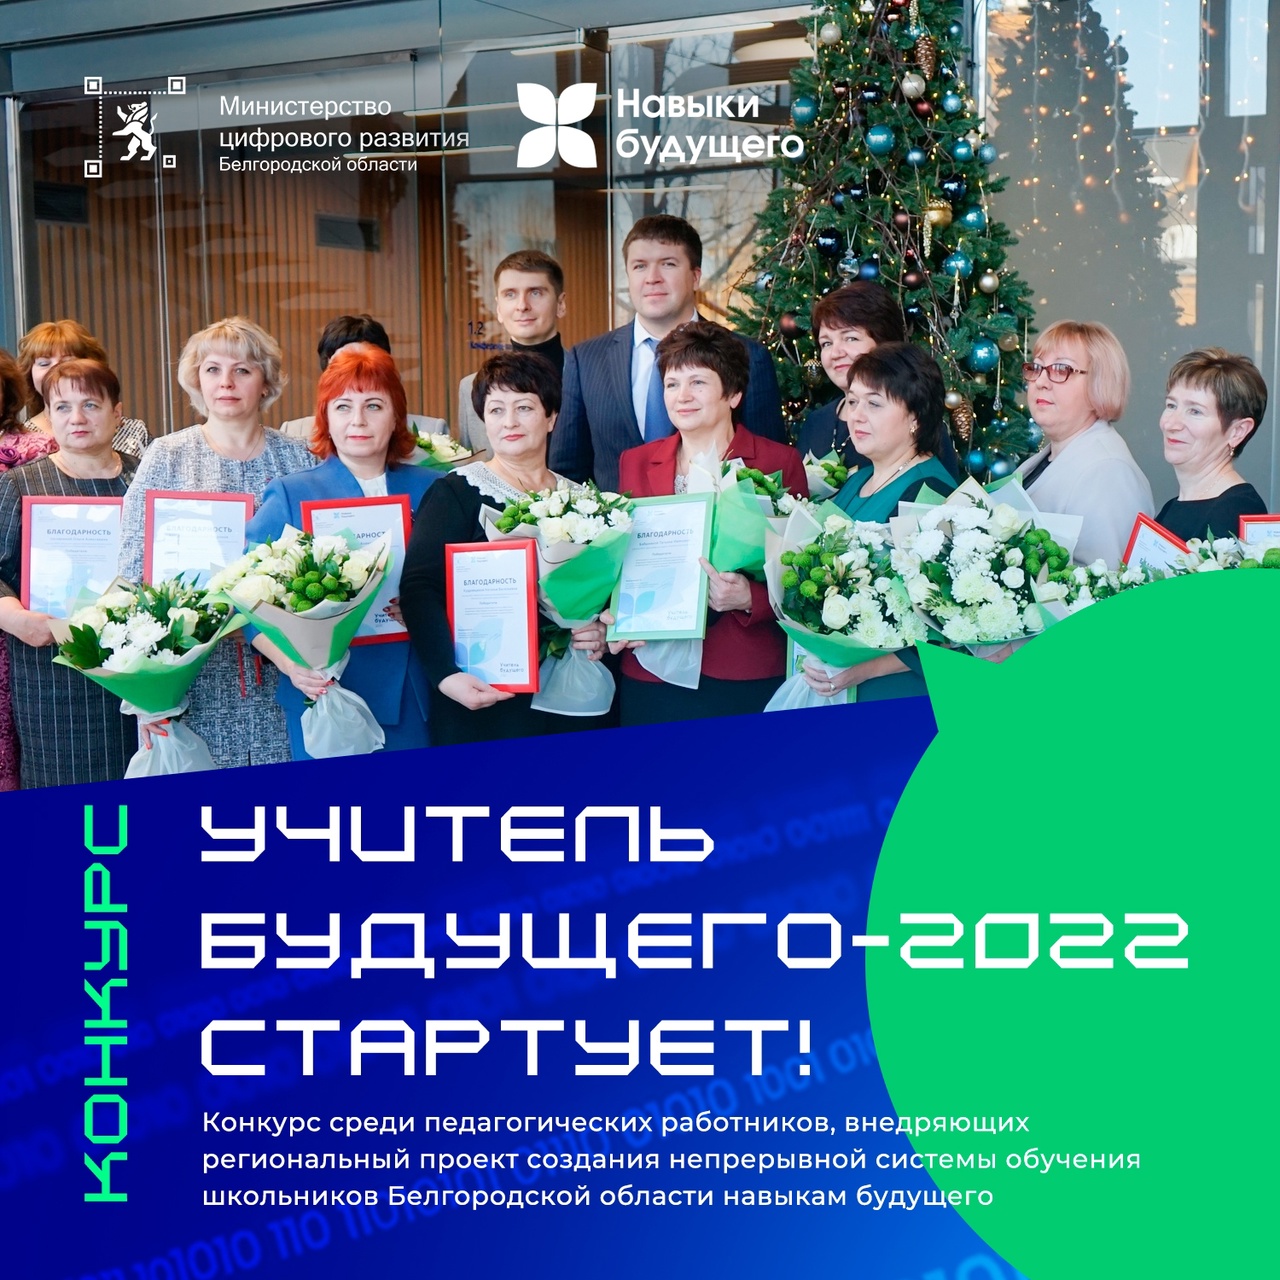 Педагоги Белгородского района приглашаются к участию в региональном конкурсе «Учитель будущего – 2022»